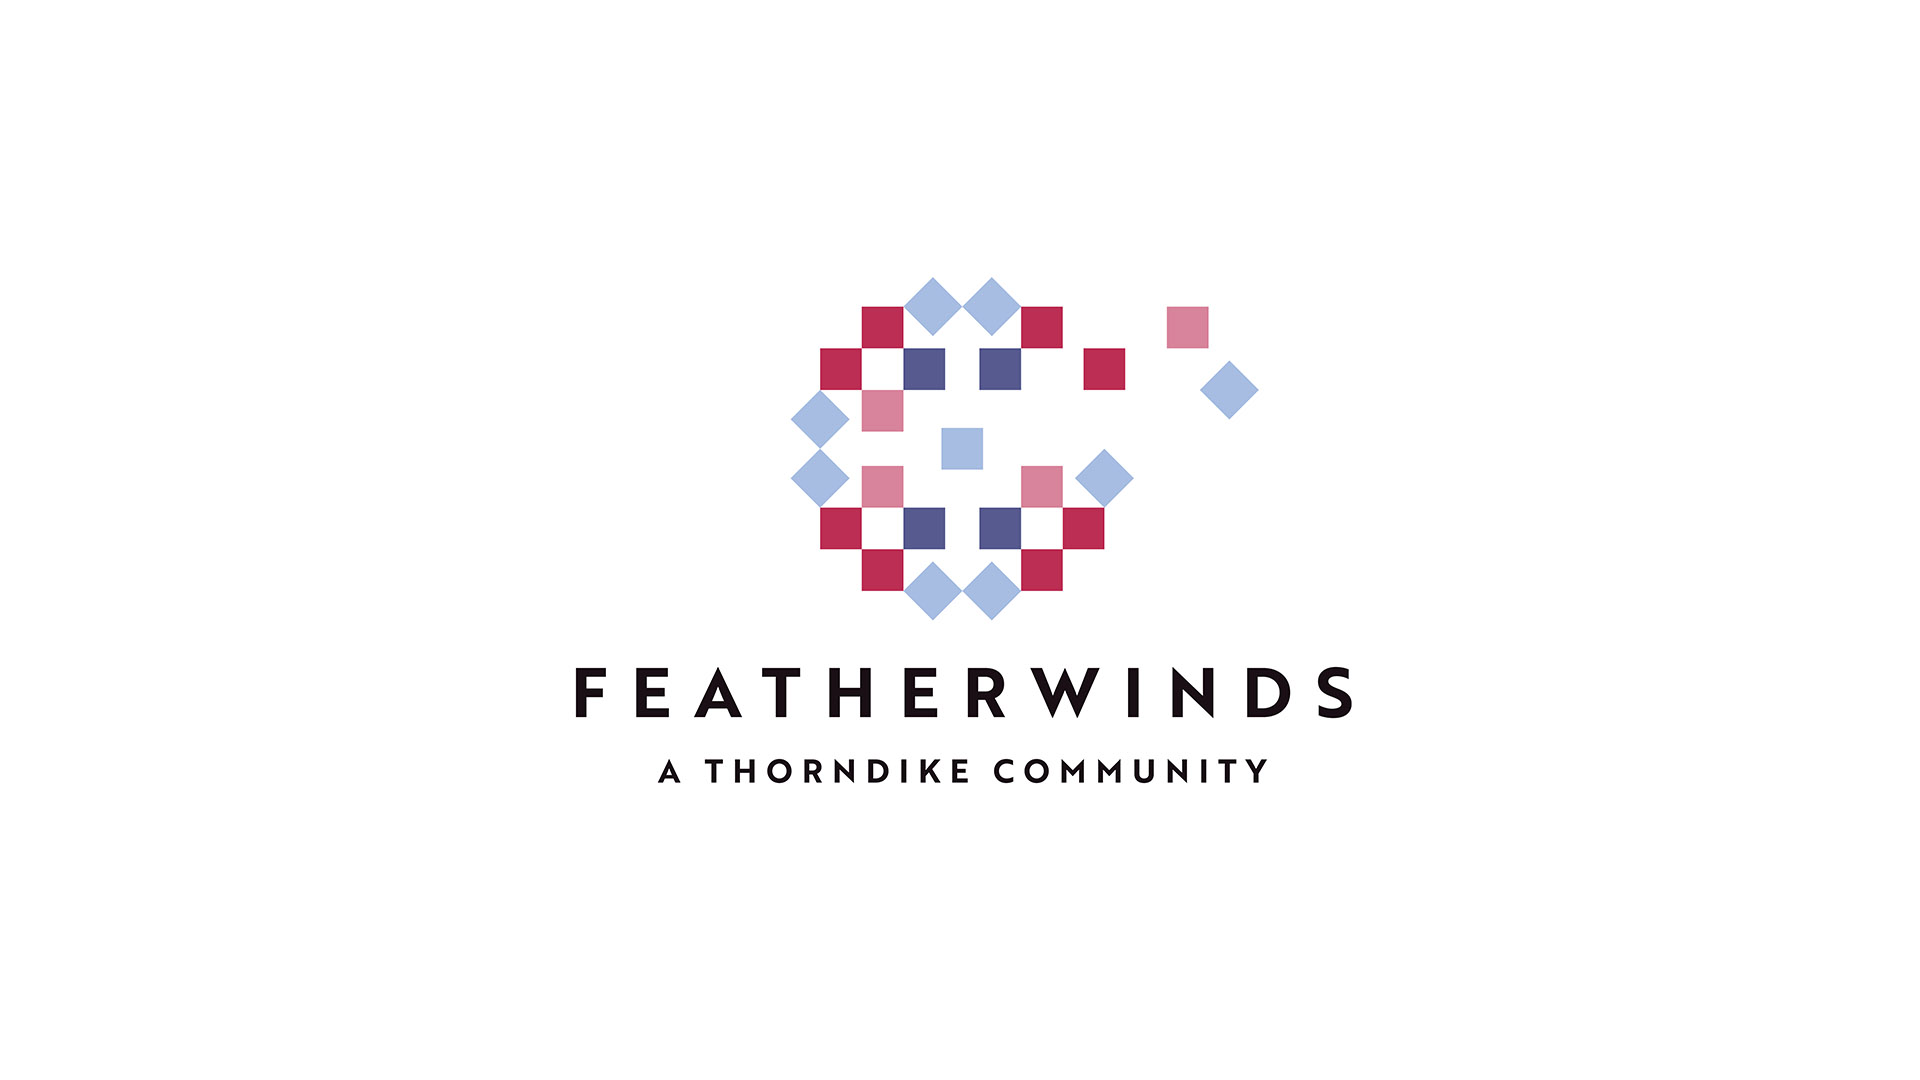 featherwinds logo on white